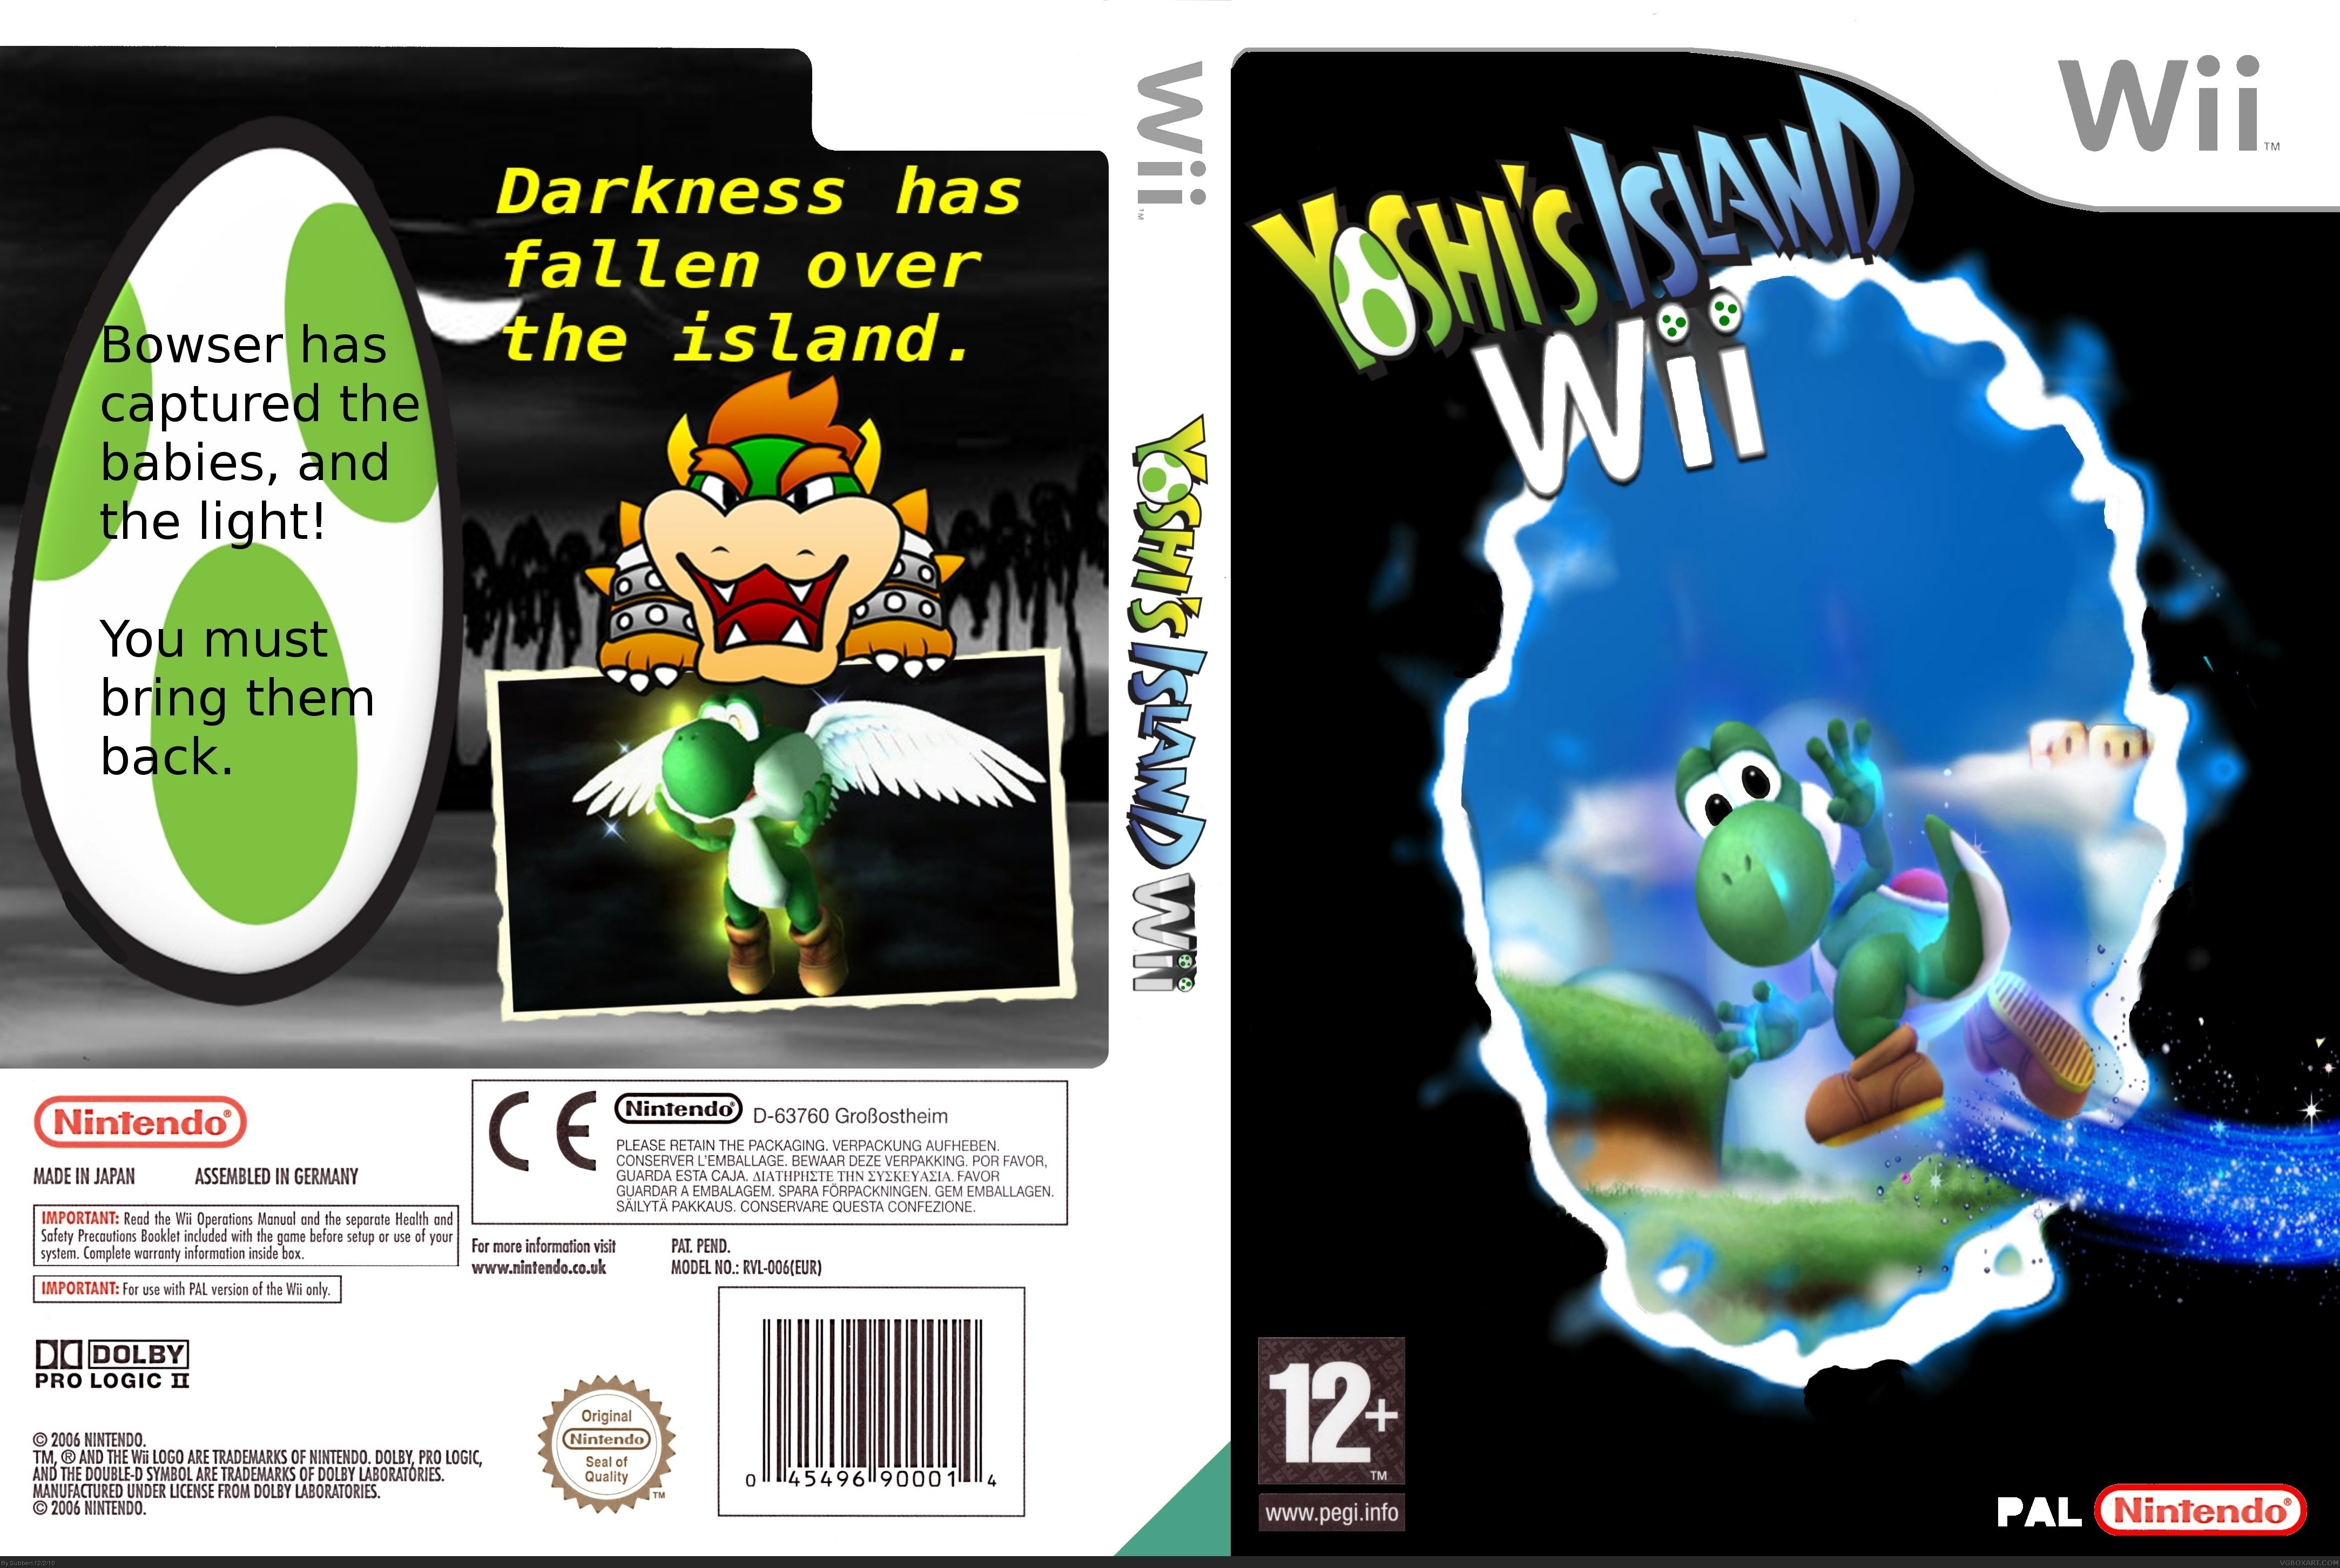 Yoshi's Island Wii box cover